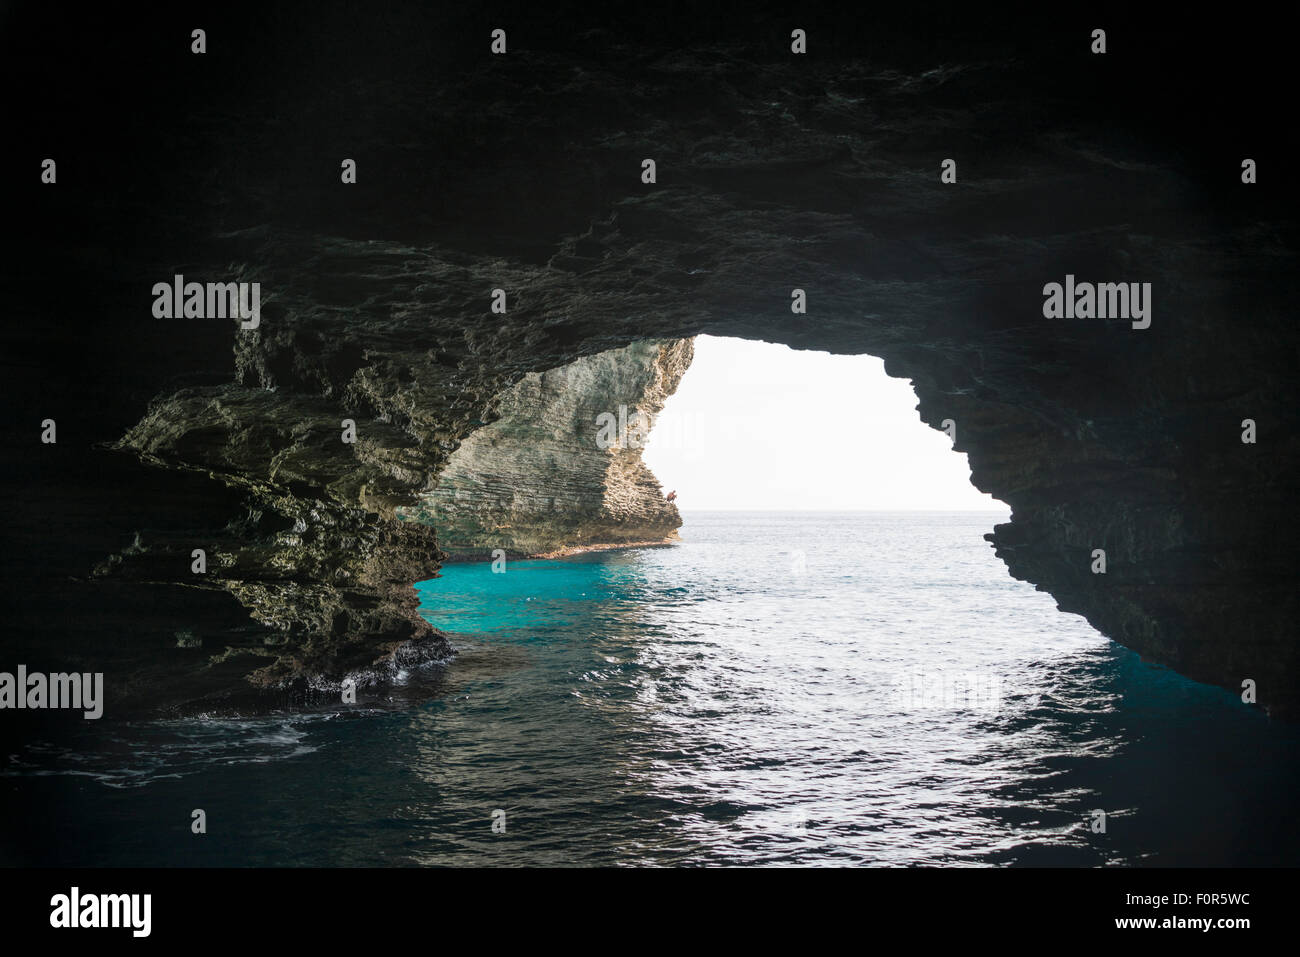 Grotte de la mer, Bonifacio, Corse, France Banque D'Images